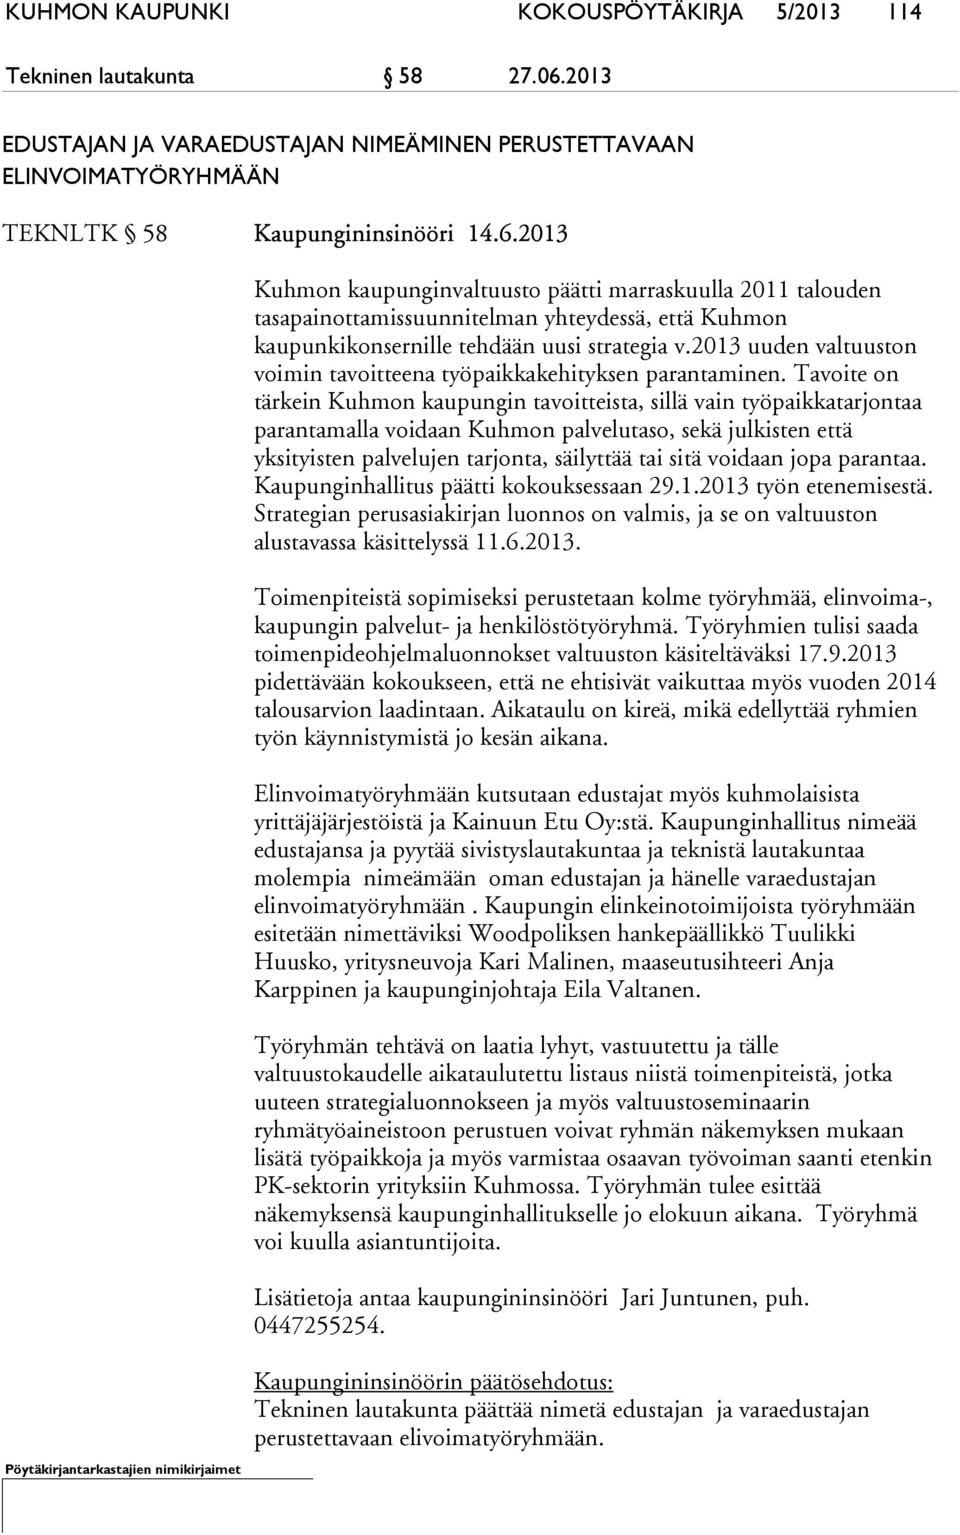 2013 Kuhmon kaupunginvaltuusto päätti marraskuulla 2011 talouden tasapainottamissuunnitelman yhteydessä, että Kuhmon kaupunkikonsernille tehdään uusi strategia v.